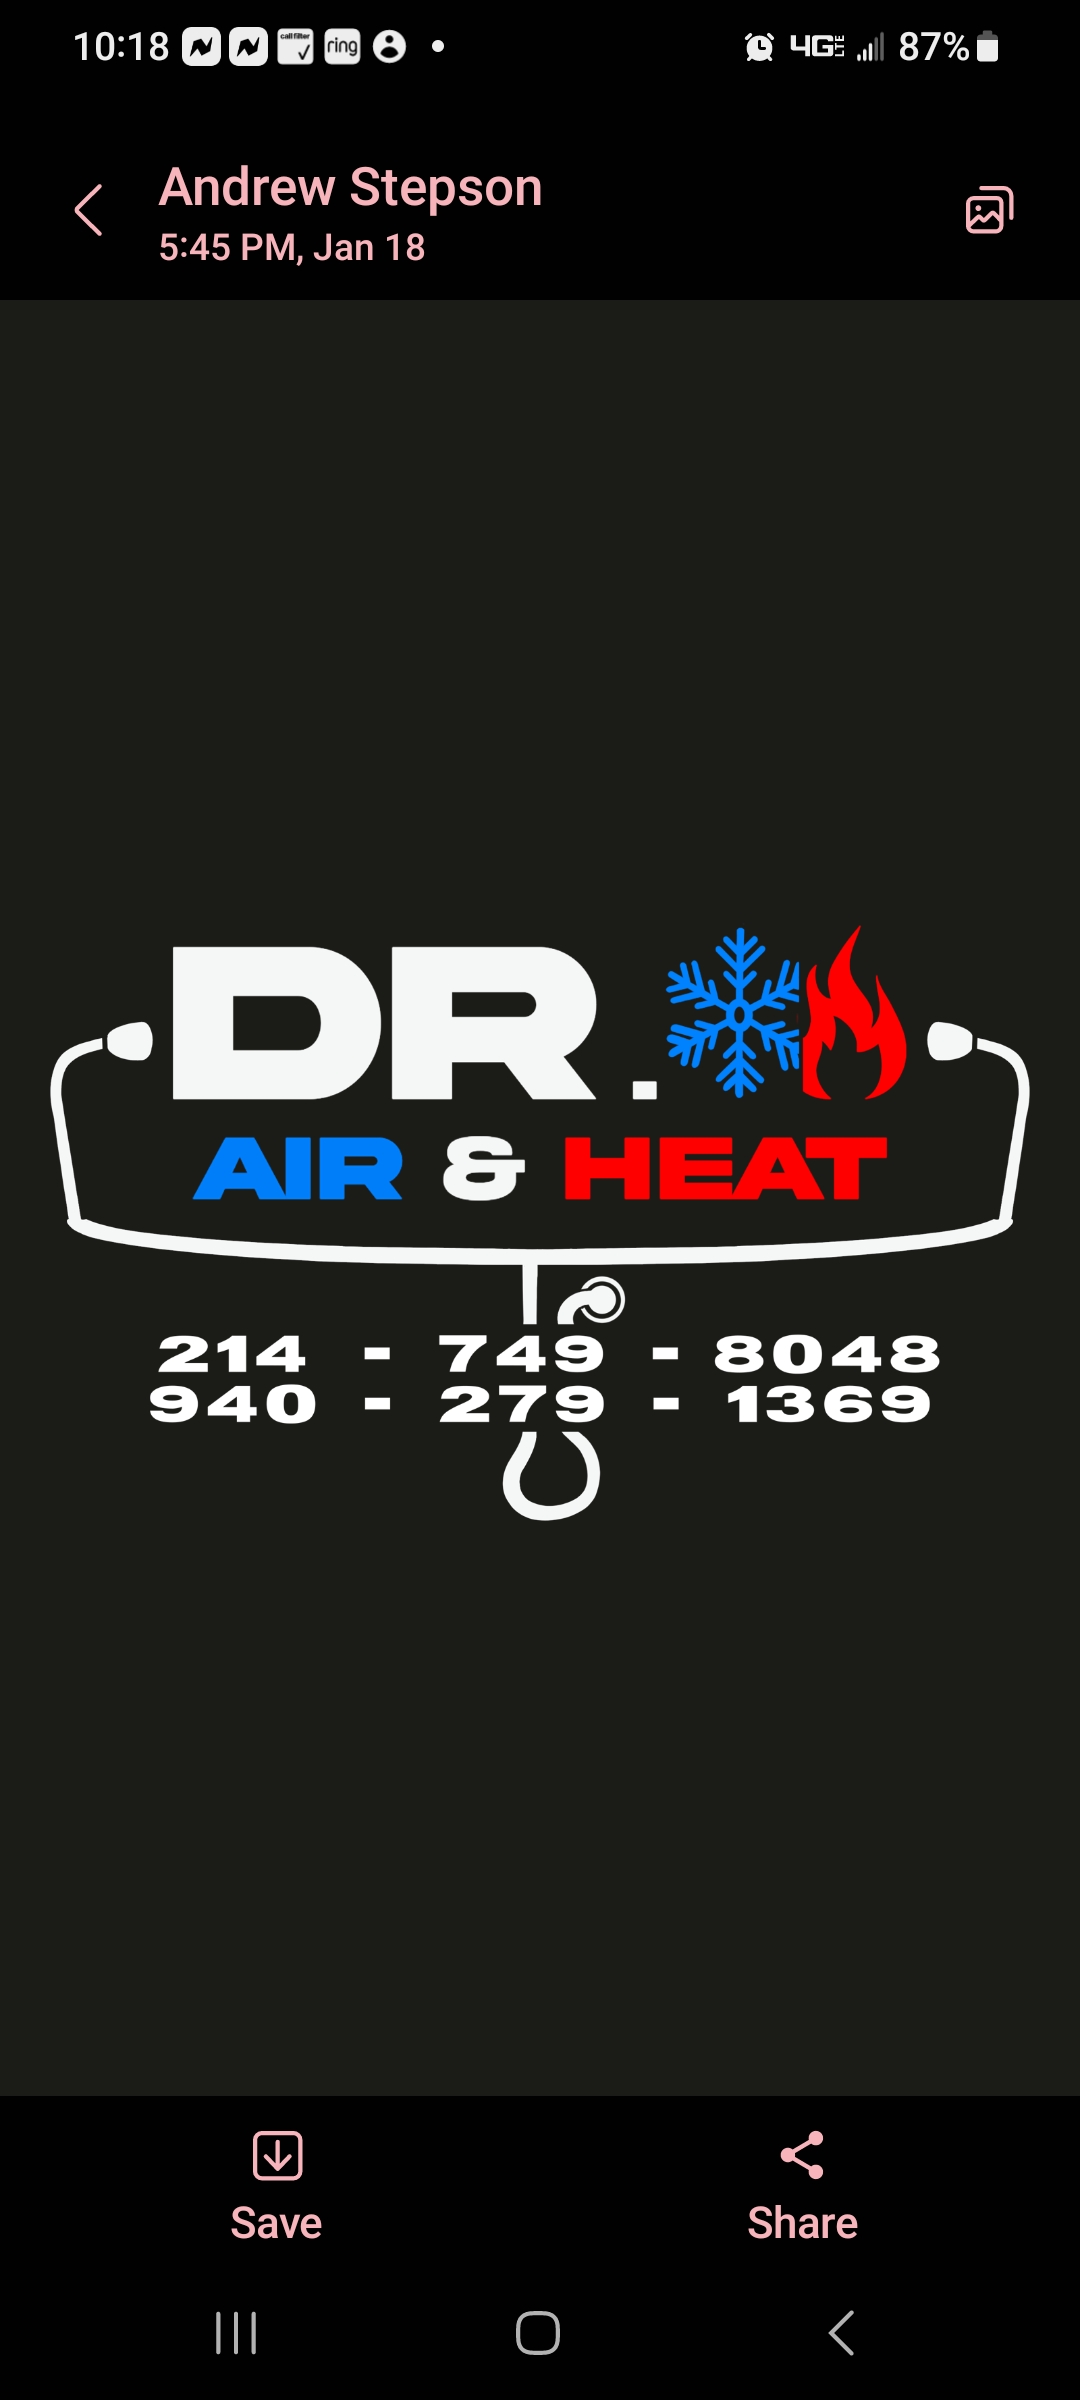 Dr. Air & Heat Services, LLC Logo